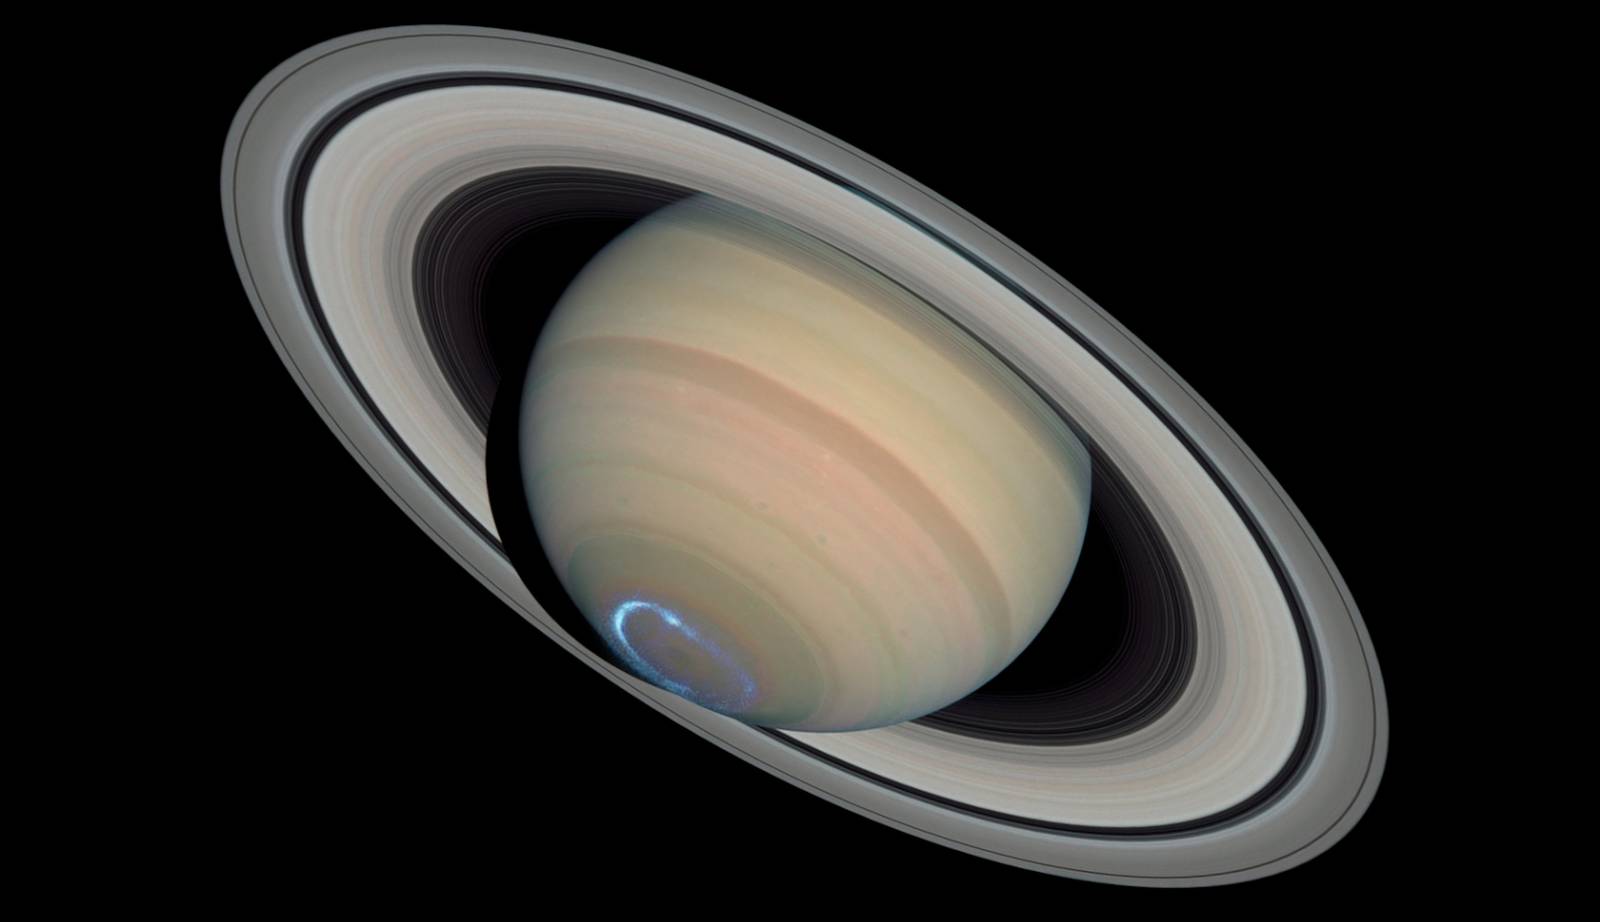 planeta Saturn temperaturi